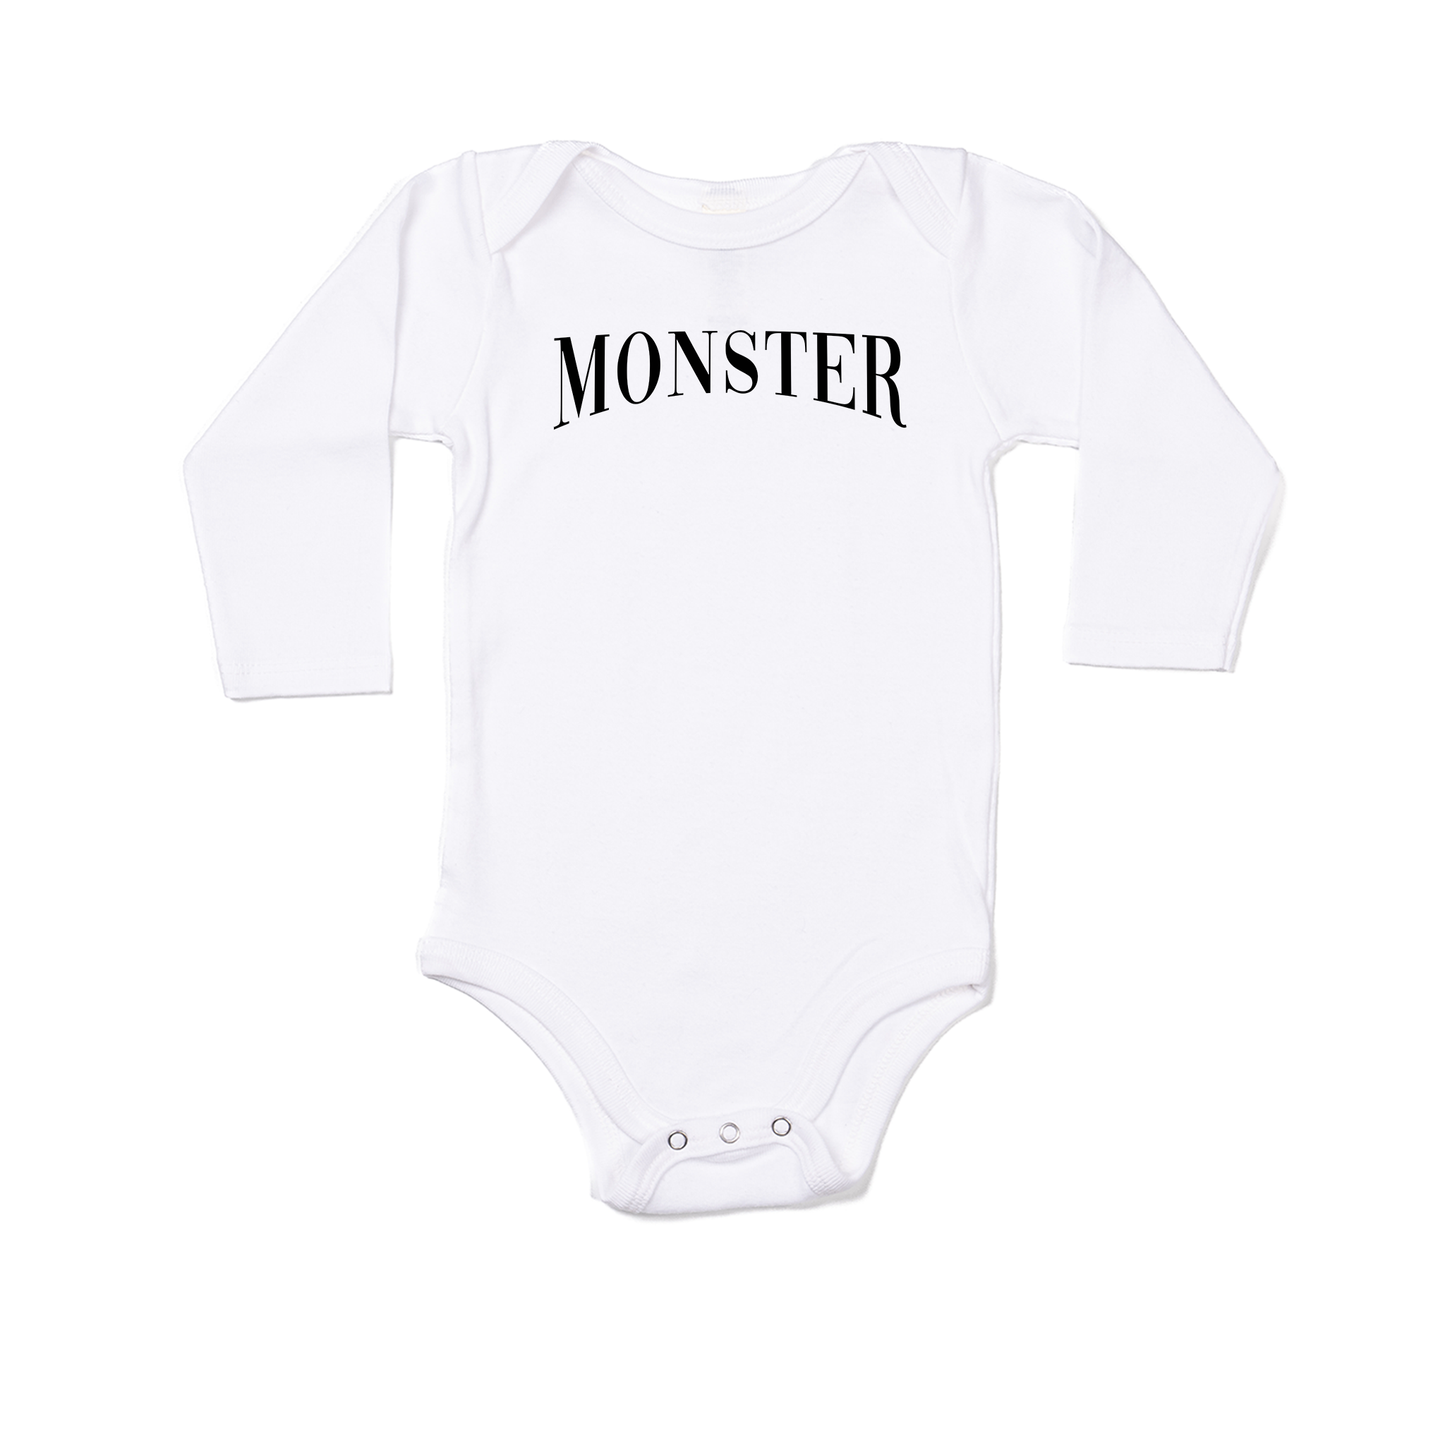 Monster (Black) - Bodysuit (White, Long Sleeve)